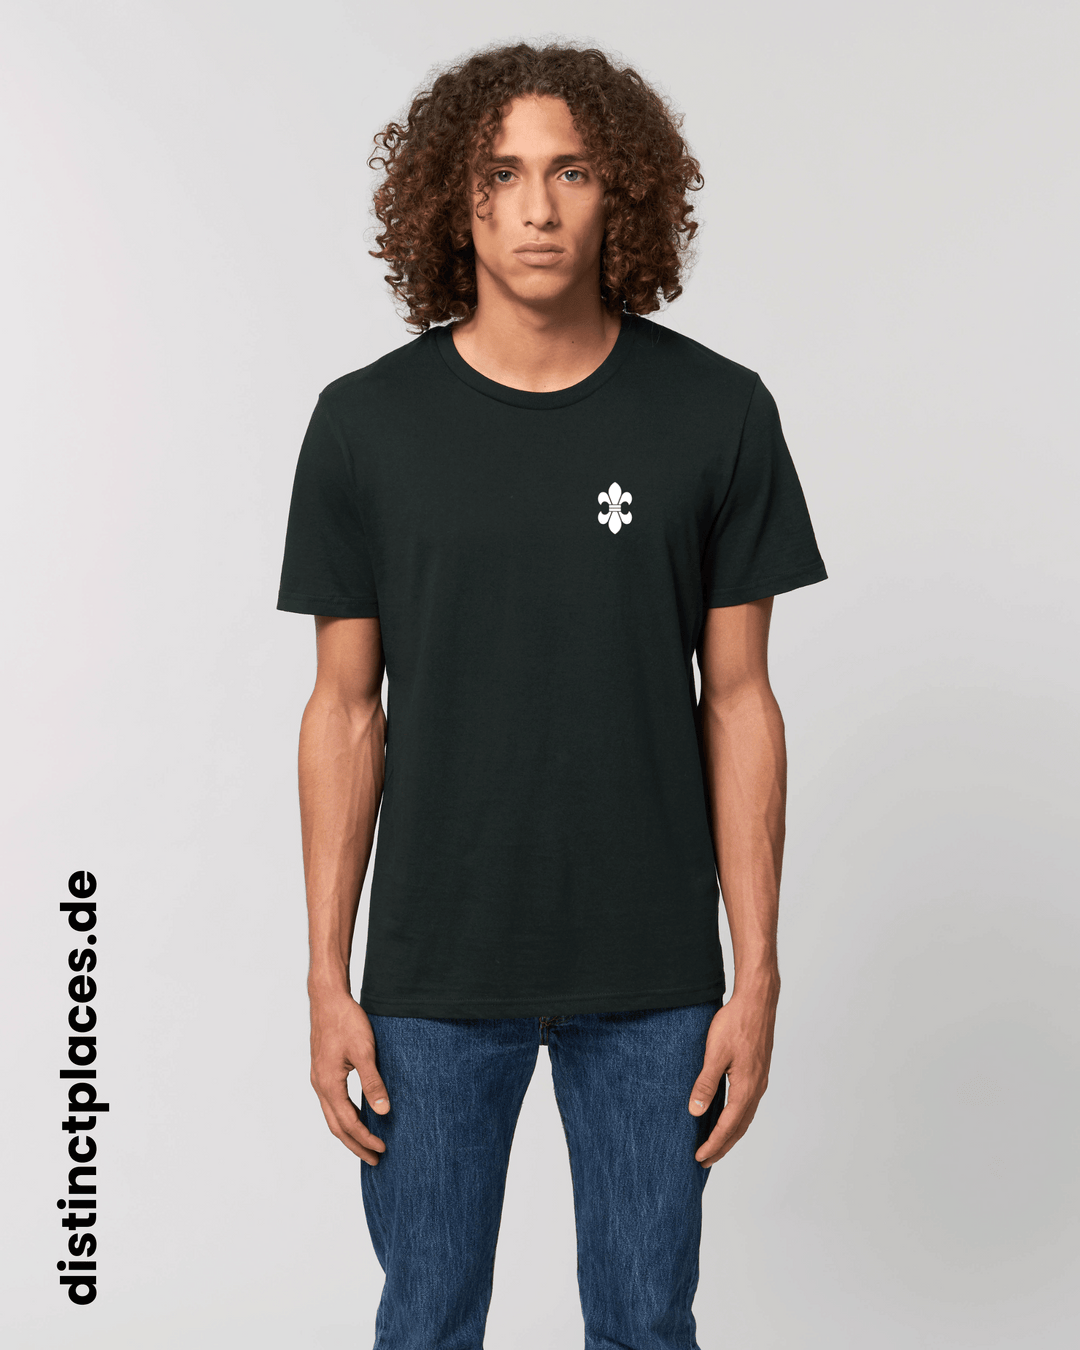 Mann von vorne trägt schwarzes fairtrade, vegan und bio-baumwoll T-Shirt mit einem minimalistischem weißen Logo, beziehungsweise Wappen für Wiesbaden